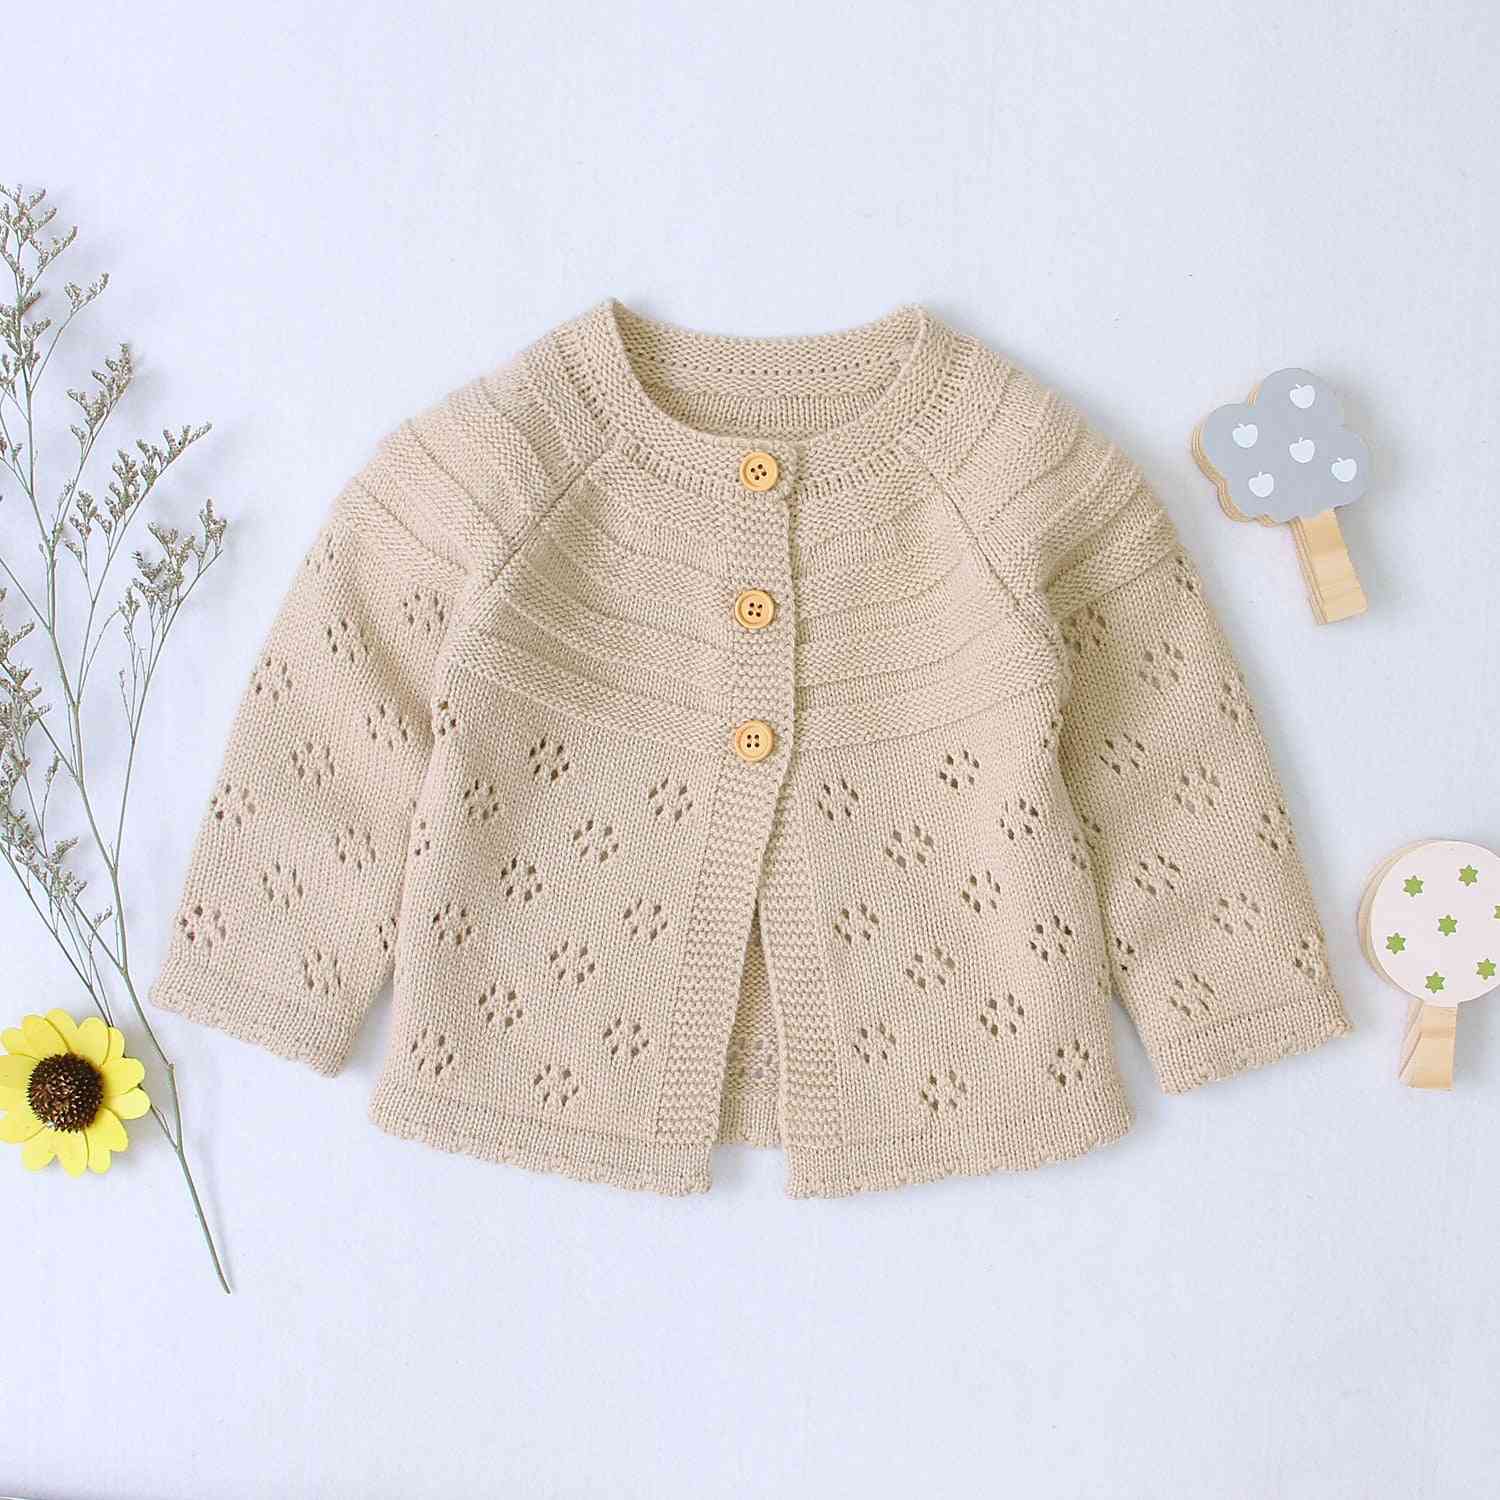 Outono inverno blusas infantis - jaqueta / blusa de algodão maciço para meninos